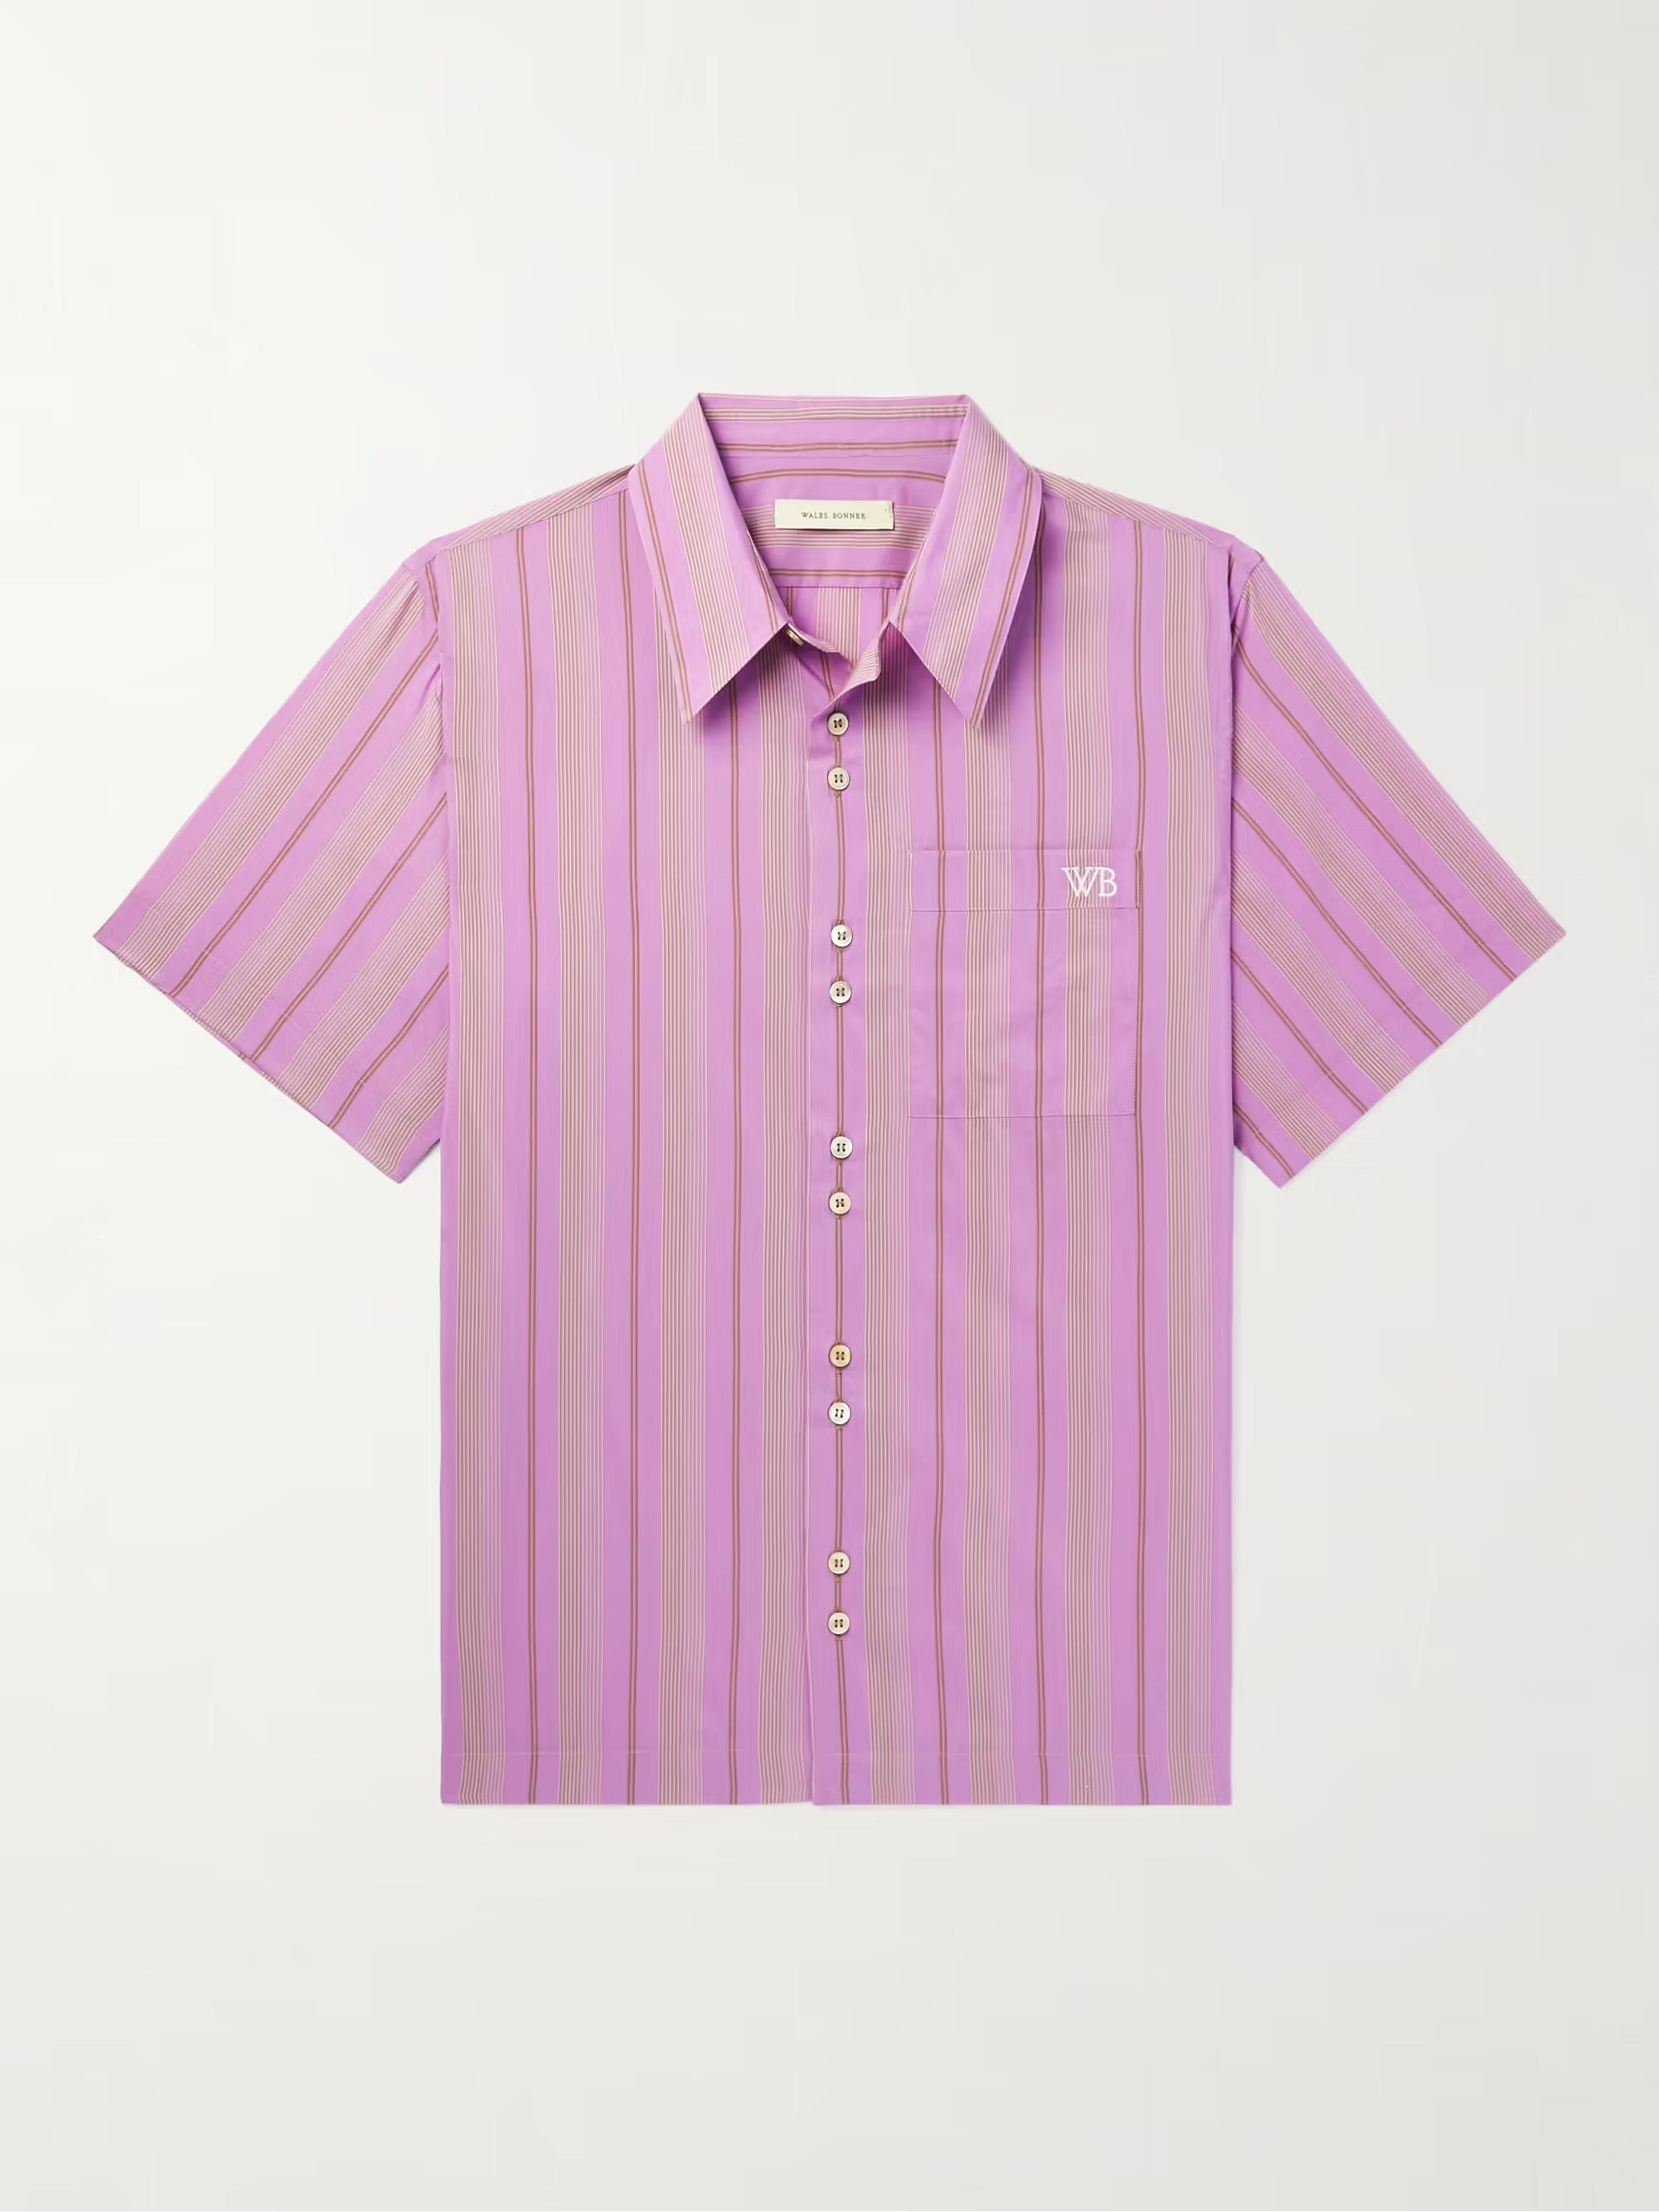 WALES BONNER Stripe Rhythm Striped Cotton-Blend Shirt | MR PORTER